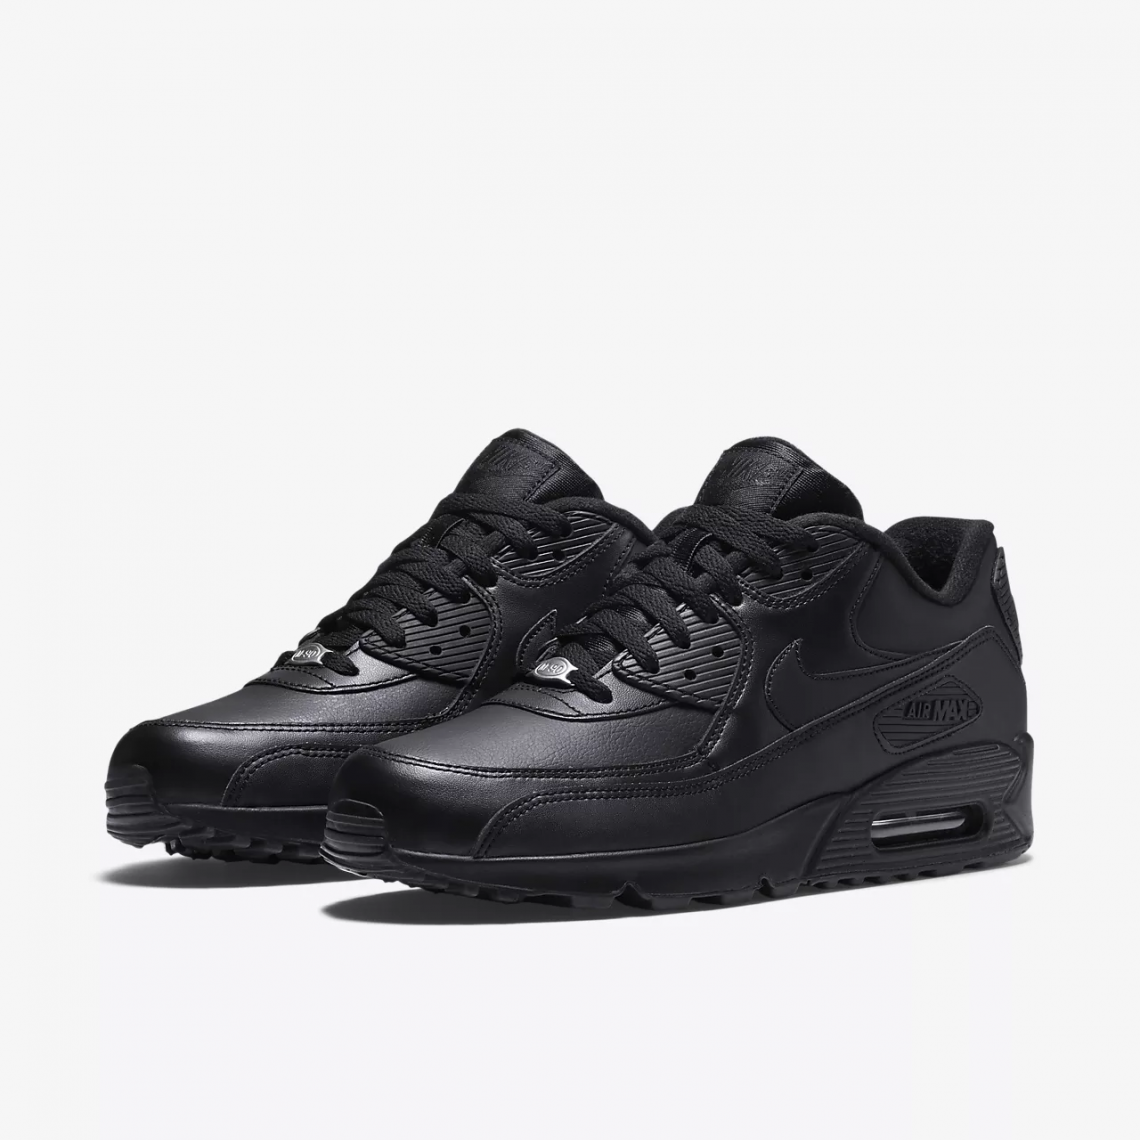 Nike Air Max 90 svarta helläder skor för damer och herrar 302519-001